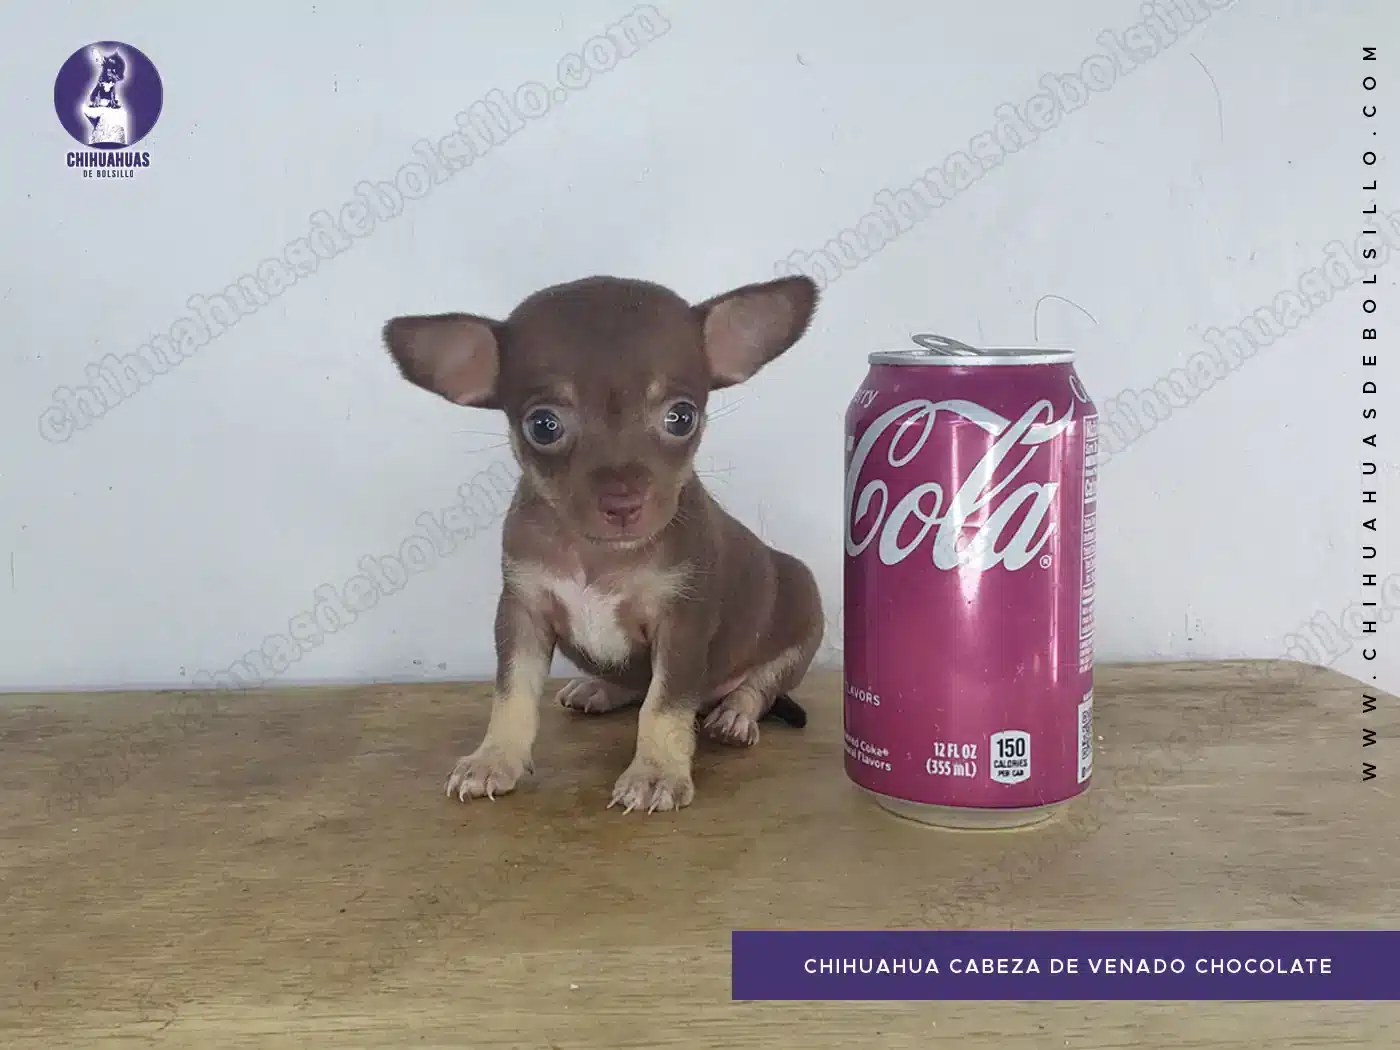 Chihuahua Cabeza de Venado Chocolate